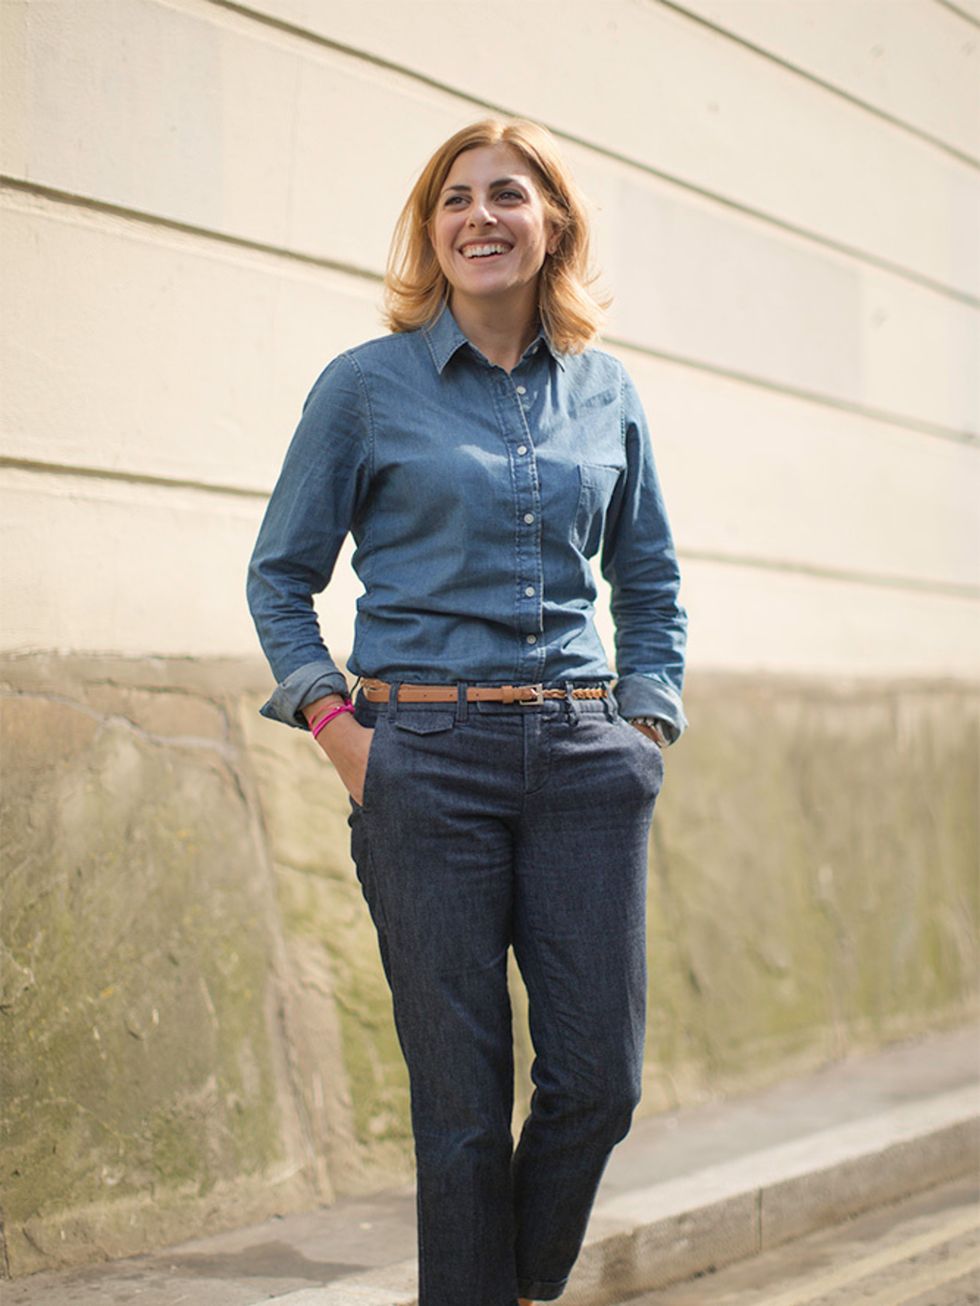 <p>Christina Simone  Workflow Director</p>

<p>Uniqlo top, Gap jeans, Office shoes, Longchamp bag.</p>